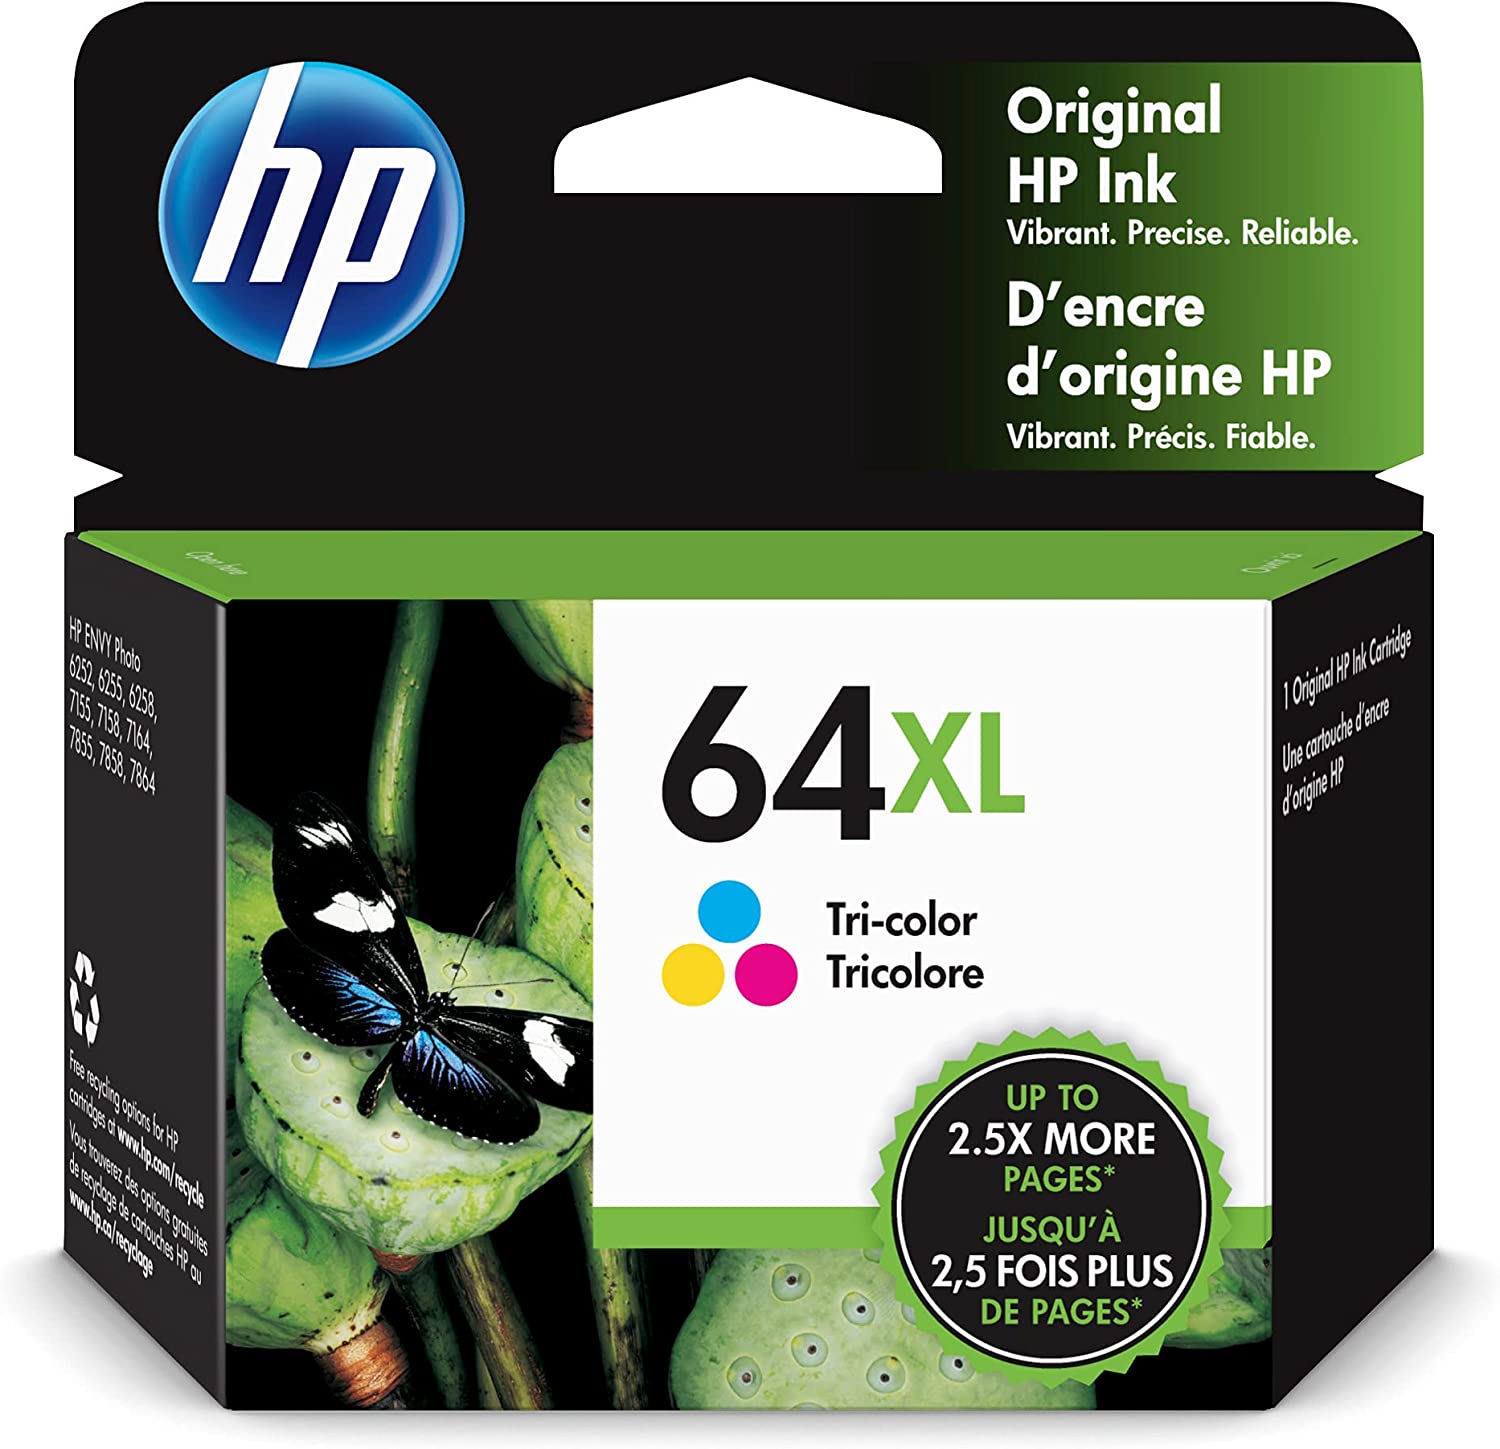 HP 64XL 3색 고수익 잉크 카트리지 ENVY Enspire 7950e와 함께 작동 사진 6200 7100 7800 탱고 시리즈 인스턴트 적격 N9J91AN